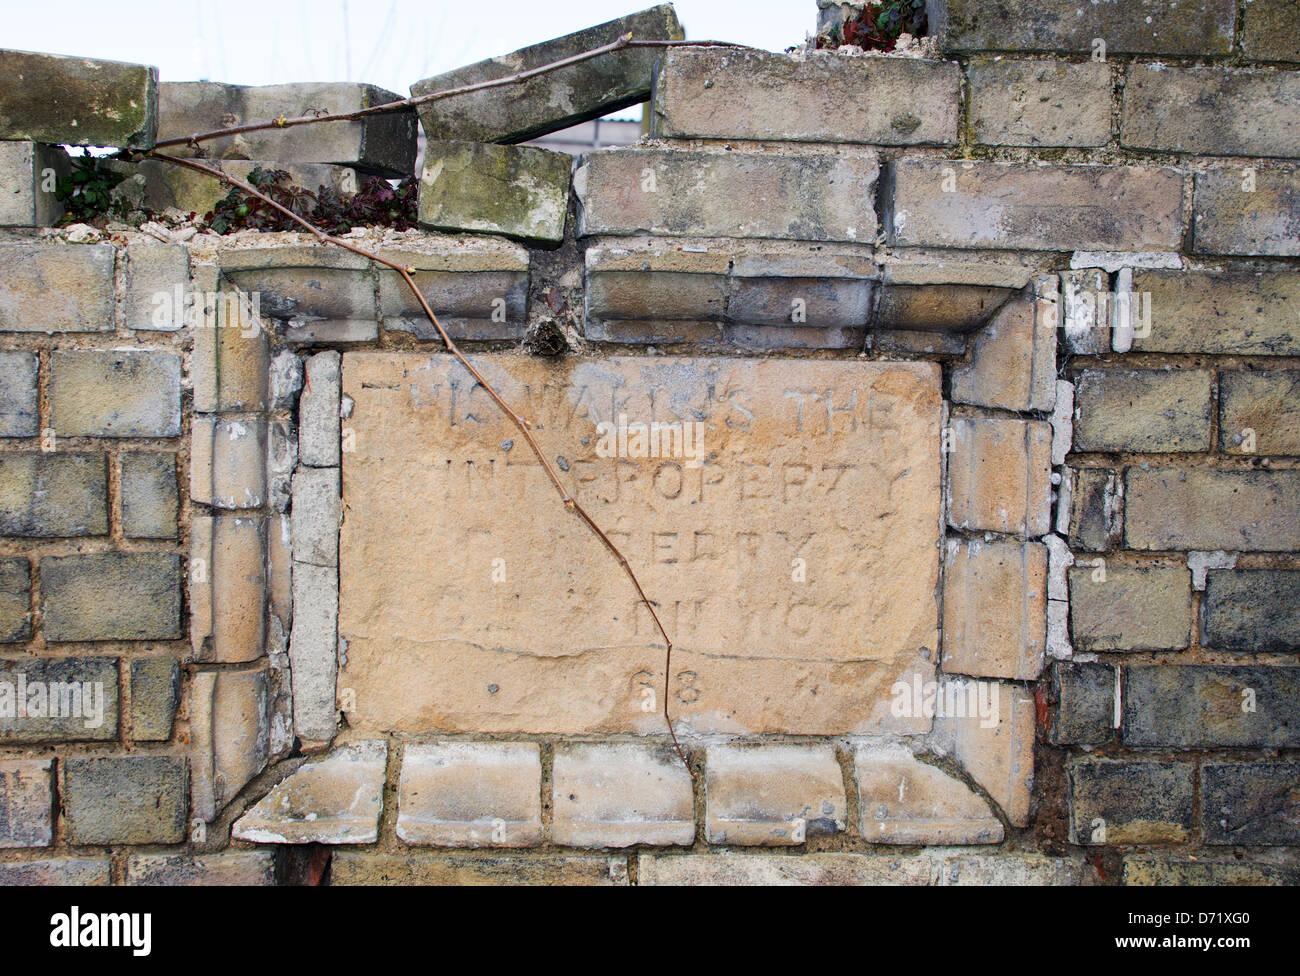 Una tableta de piedra situado en un viejo muro, marcando la titularidad de la pared. La descolorida inscripción sugiere del siglo XIX. Foto de stock